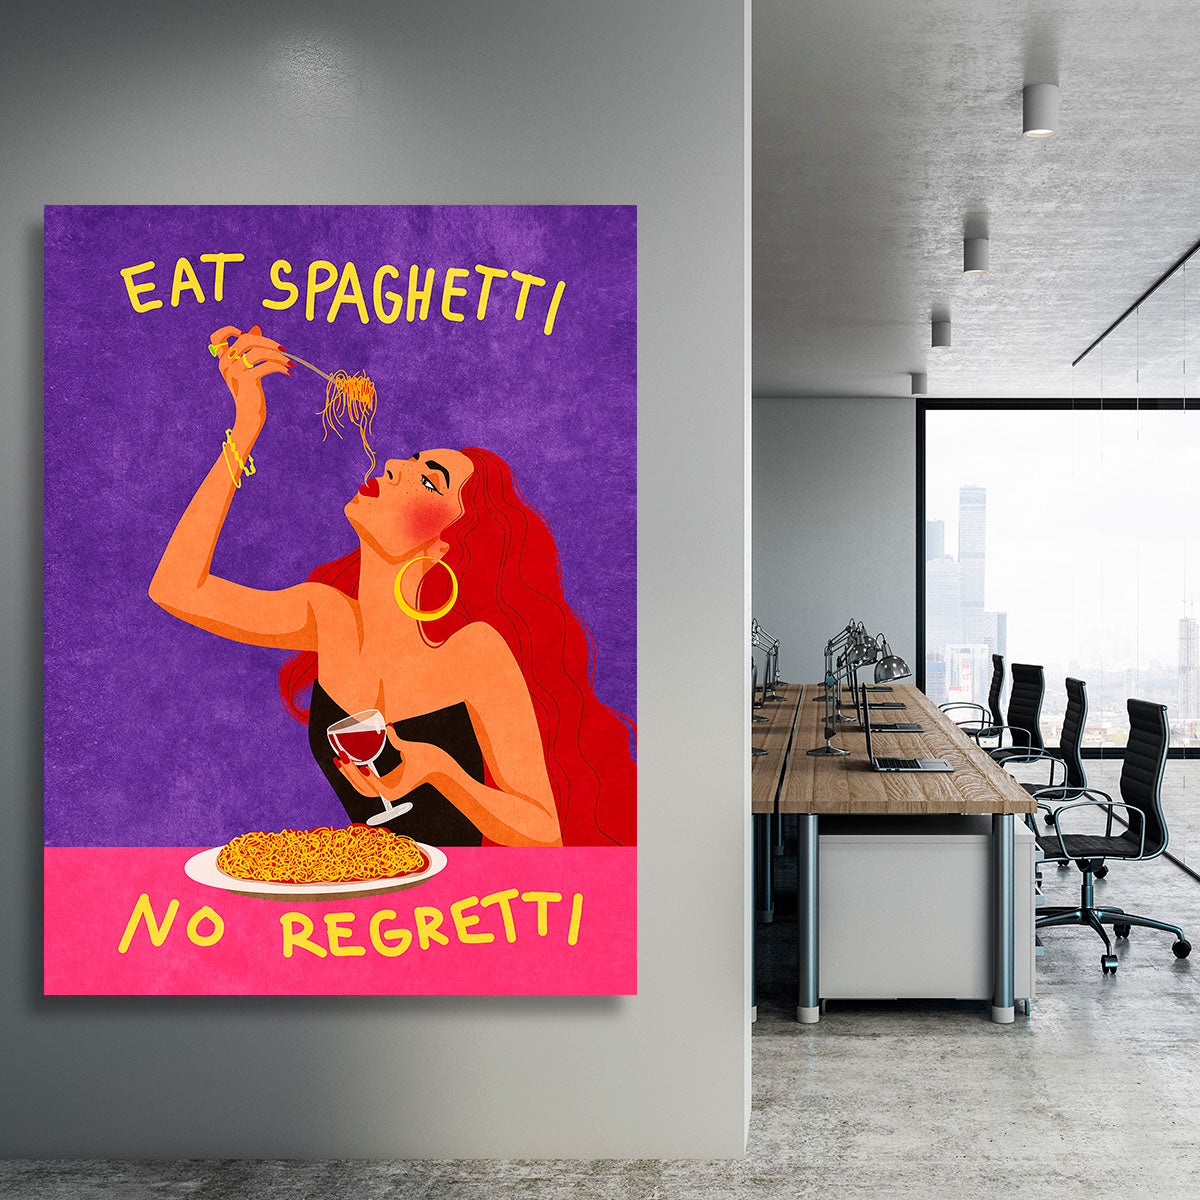 Eat spaghetti no regretti Canvas Print or Poster - Canvas Art Rocks - 3